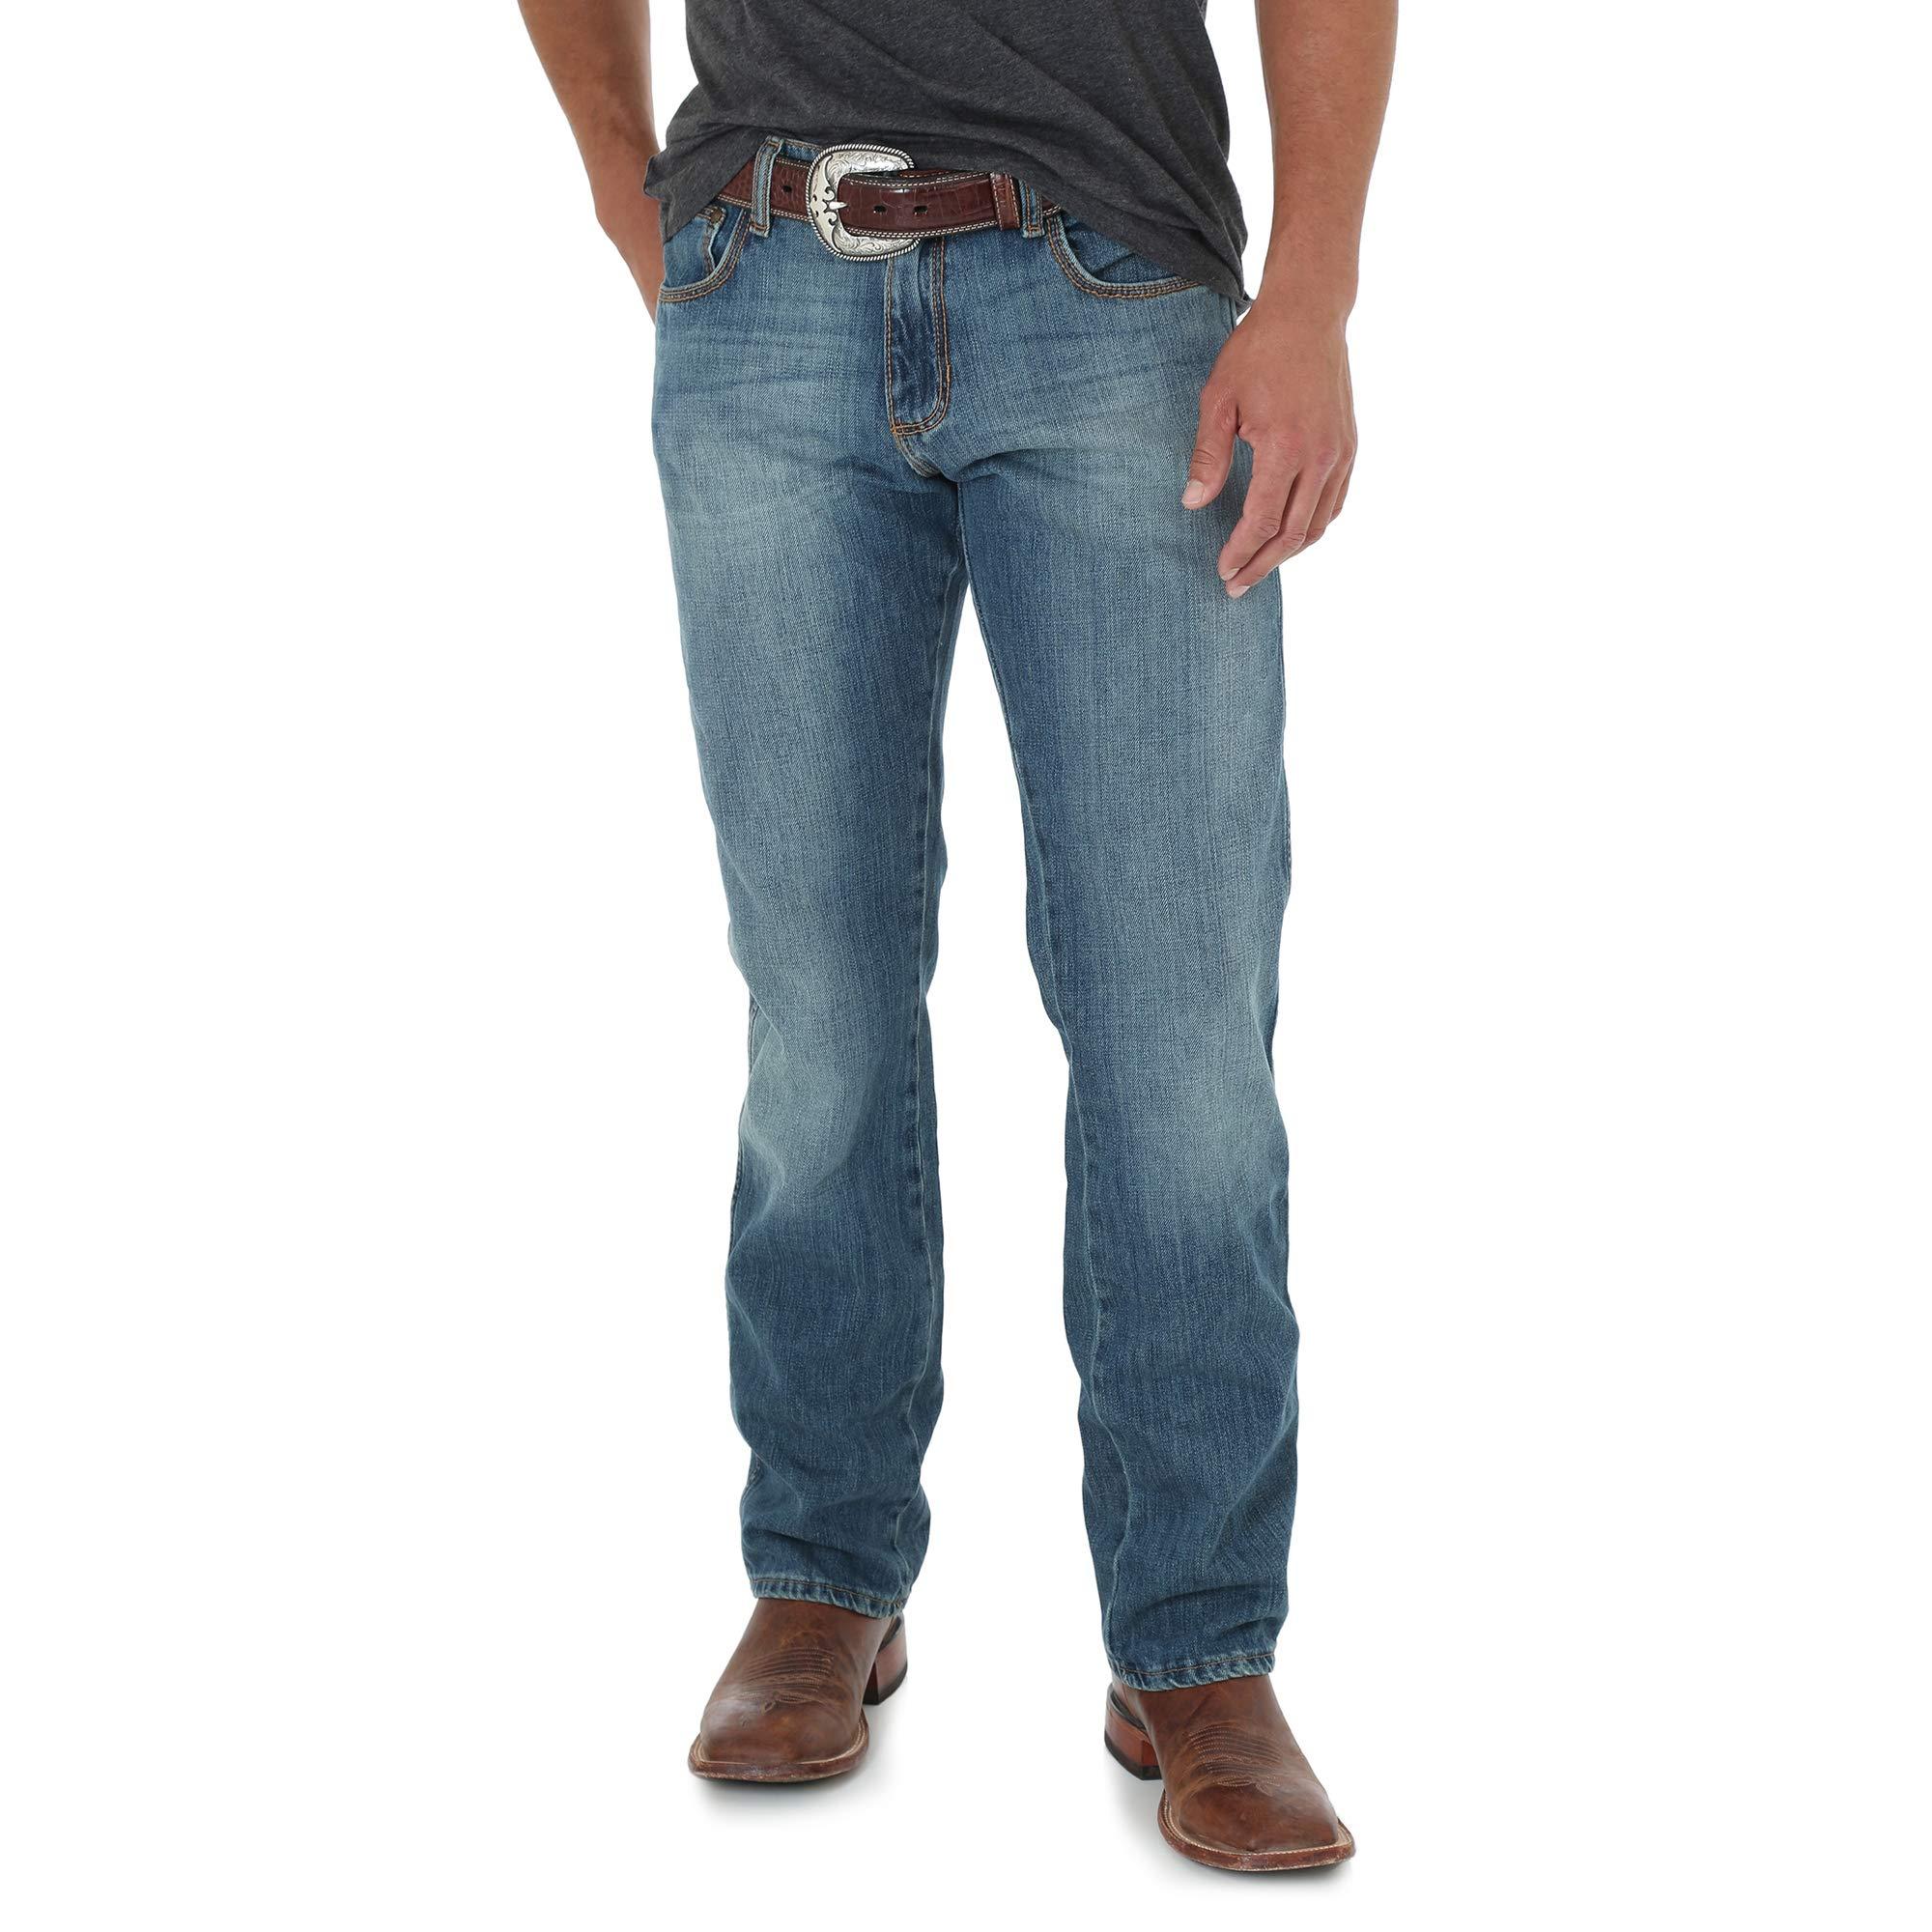 Wrangler Leather Retro Slim Fit Straight Leg Jean in Blue for Men - Lyst